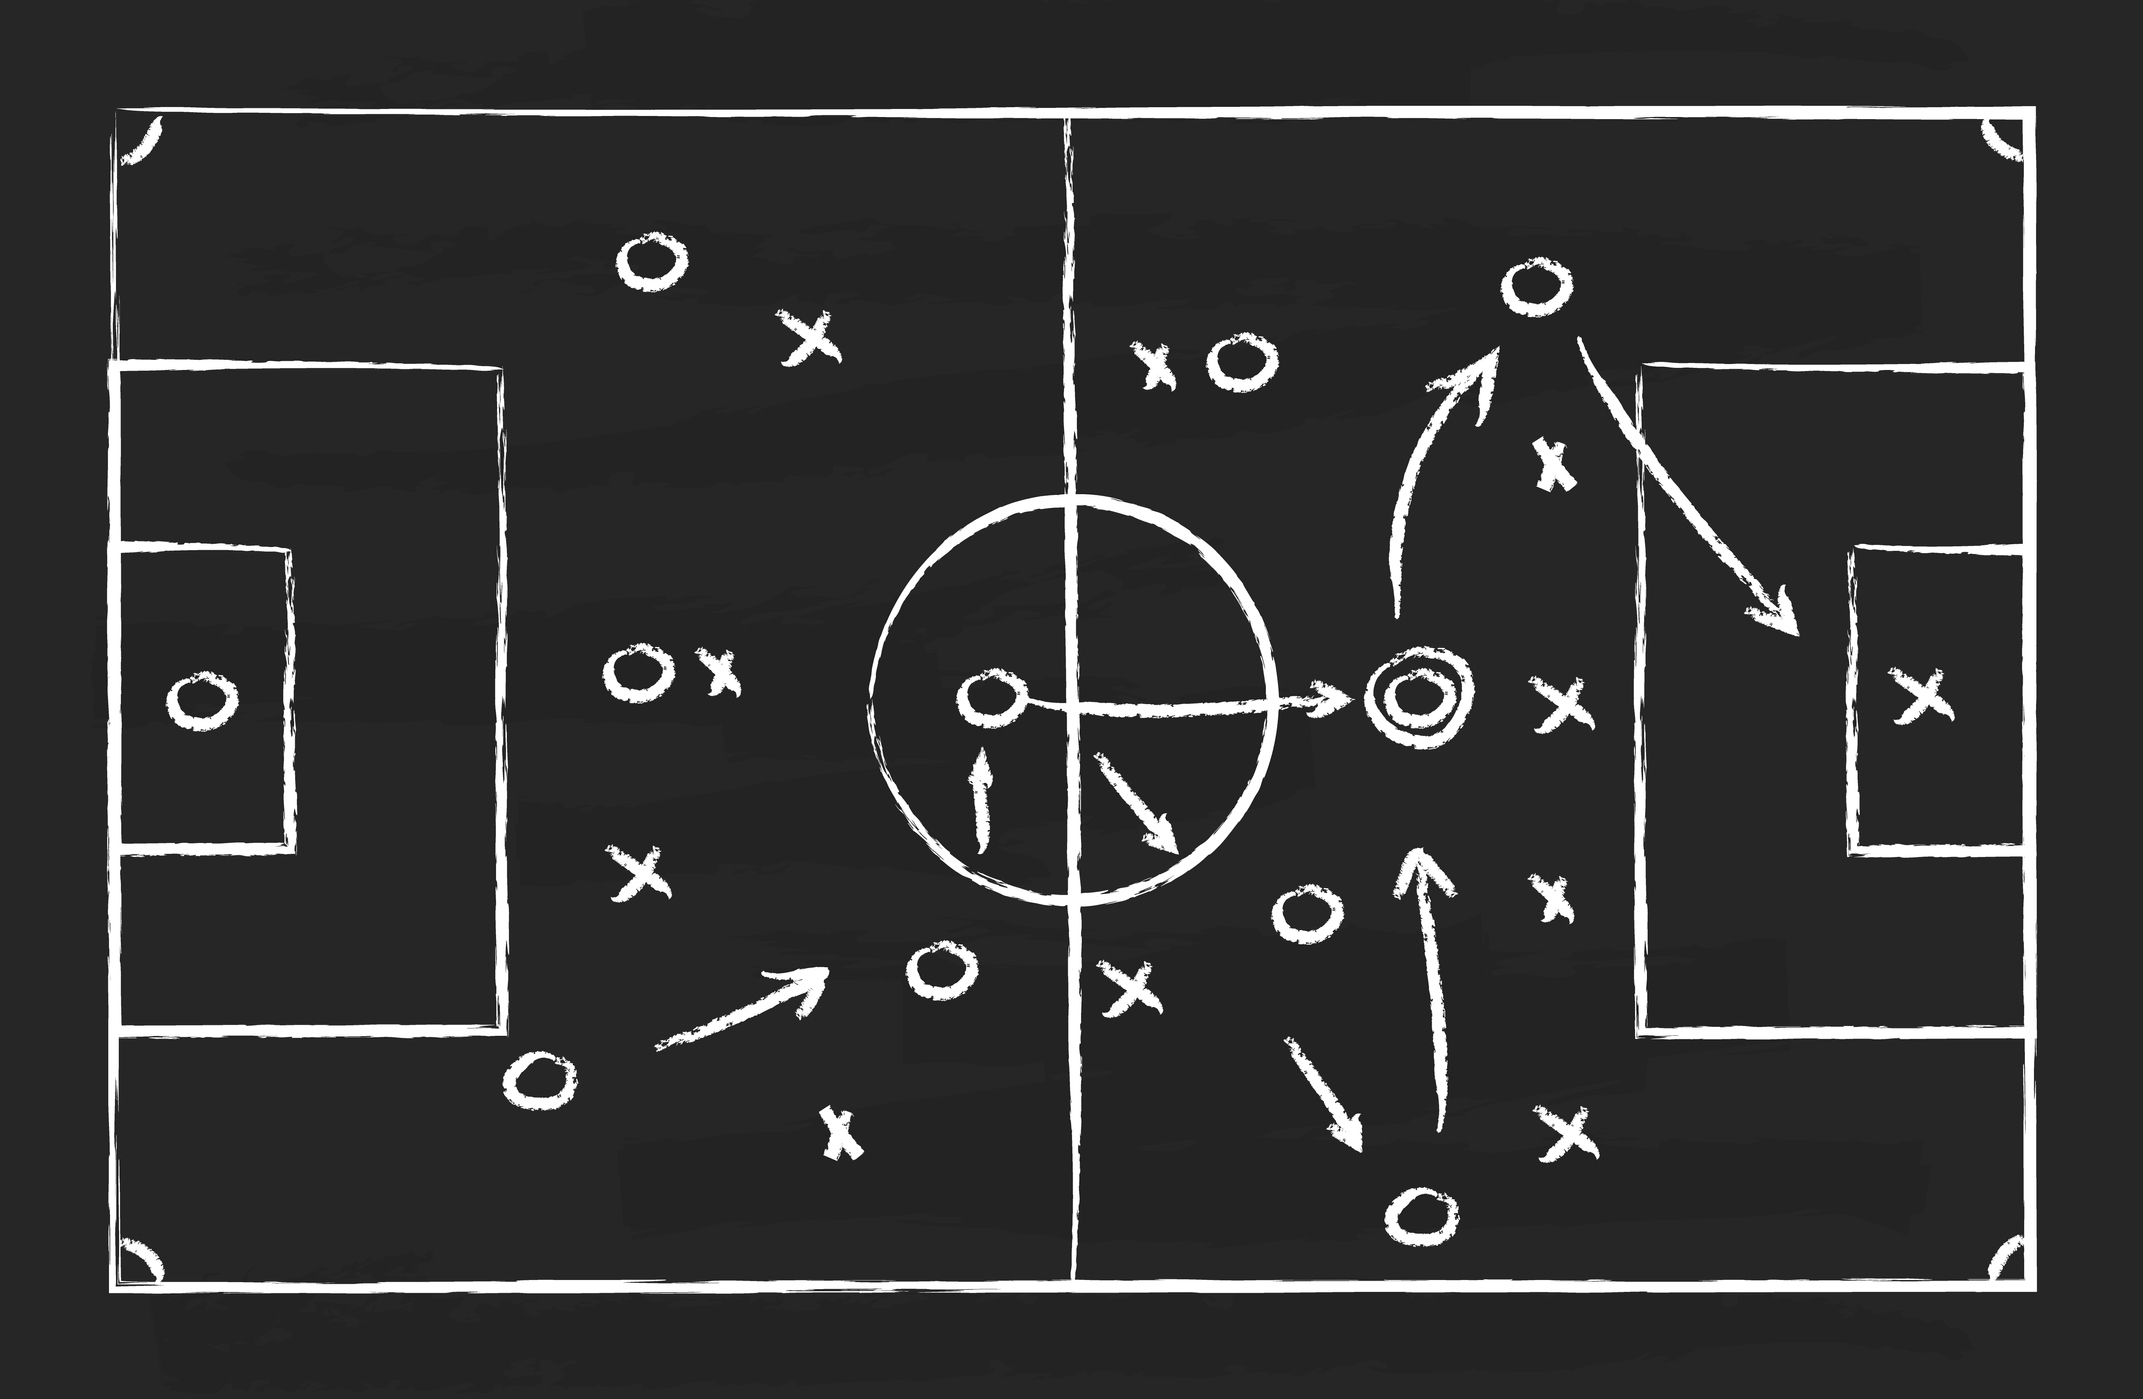 Blackboard showing football strategy